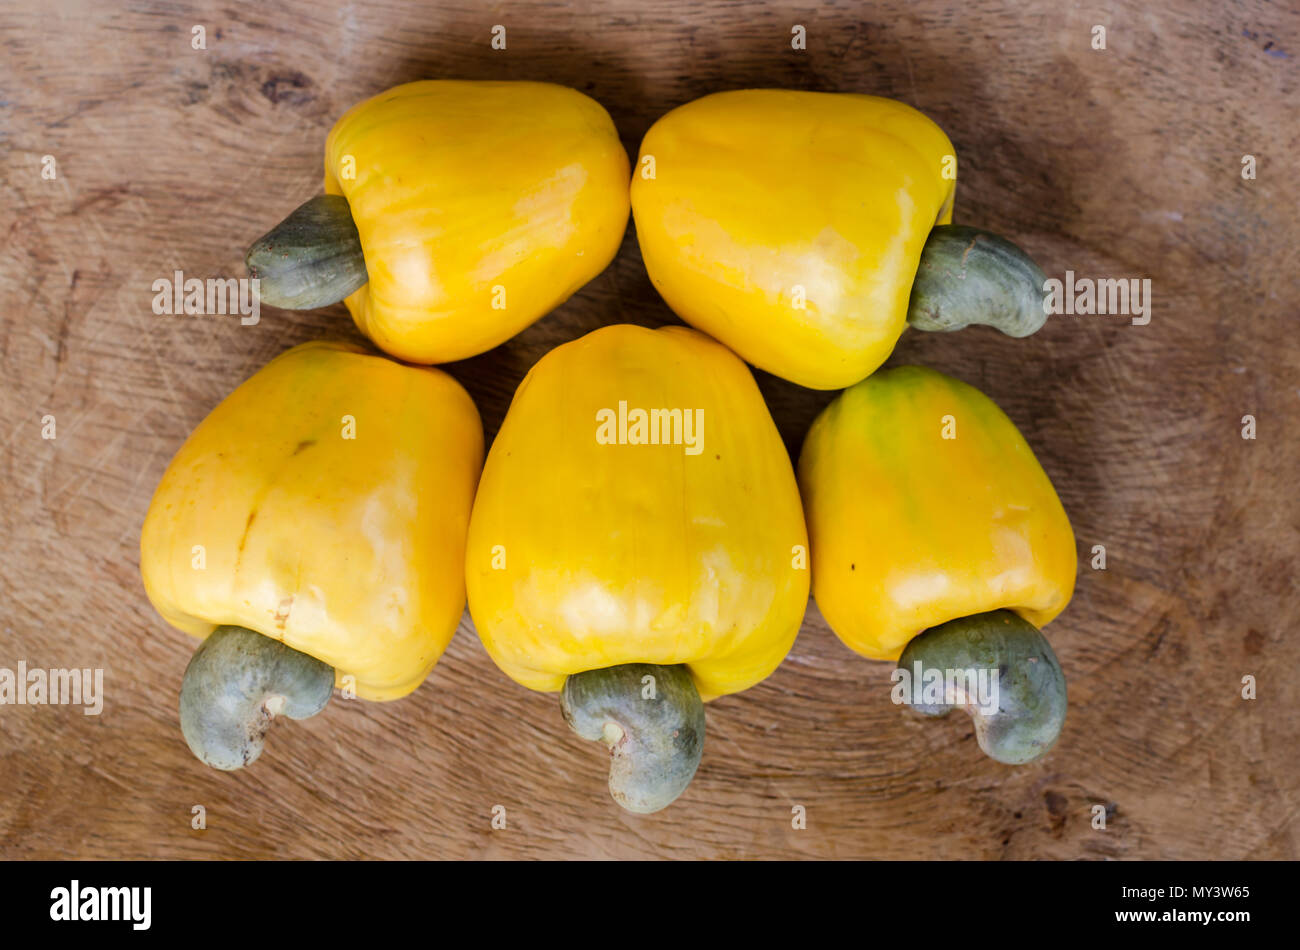 Frisch gepflückte gelbe Cashew-Früchte auf einem rustikalen Holztisch, die ihre lebhafte Farbe und natürliche Schönheit zeigen. Stockfoto